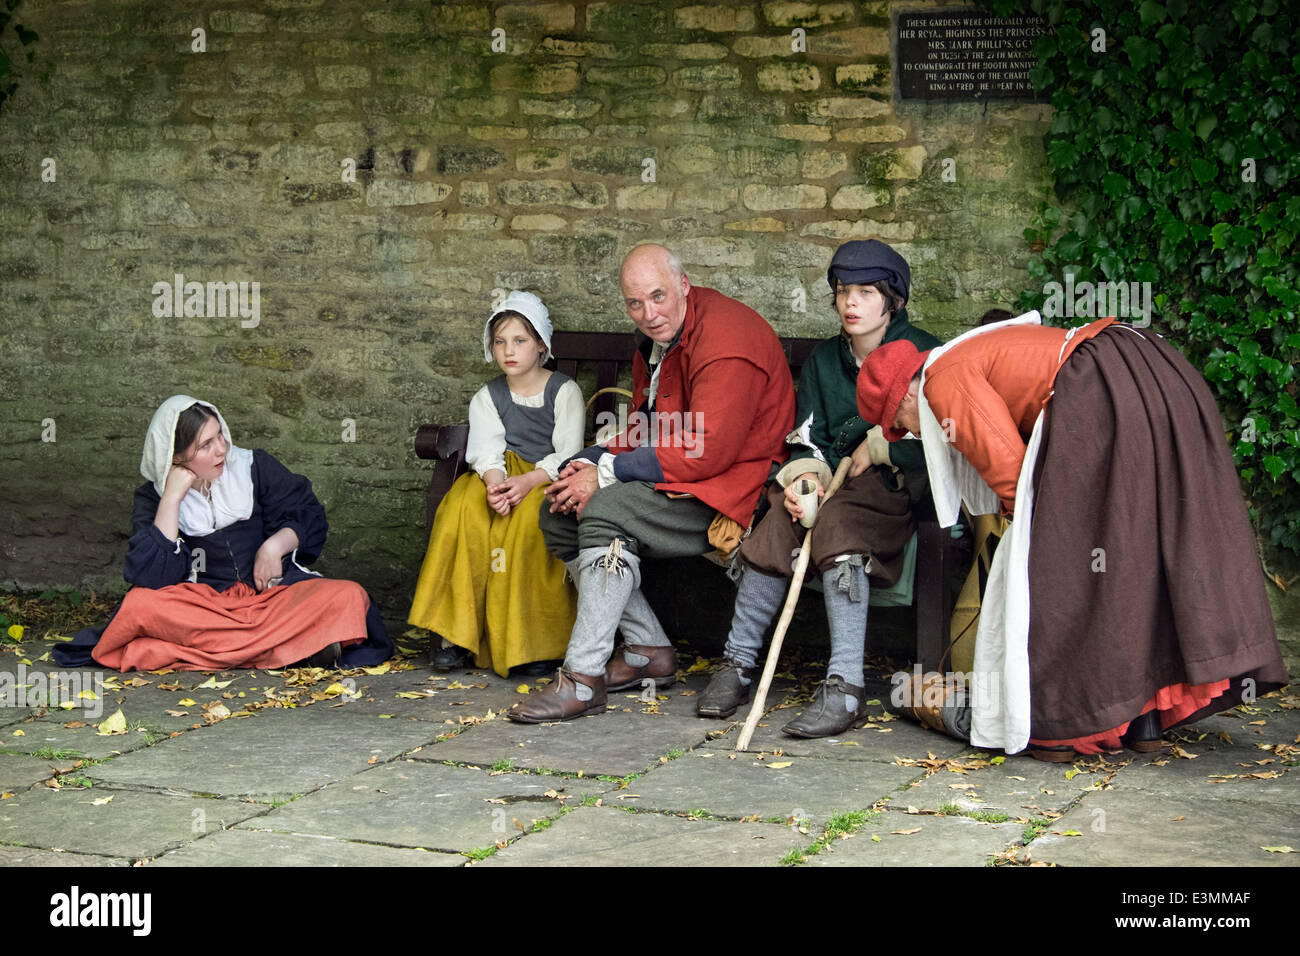 Reenactors Darstellung einer Familiengruppe der englischer Bürgerkrieg Periode im 17. Jahrhundert Kostüm Stockfoto